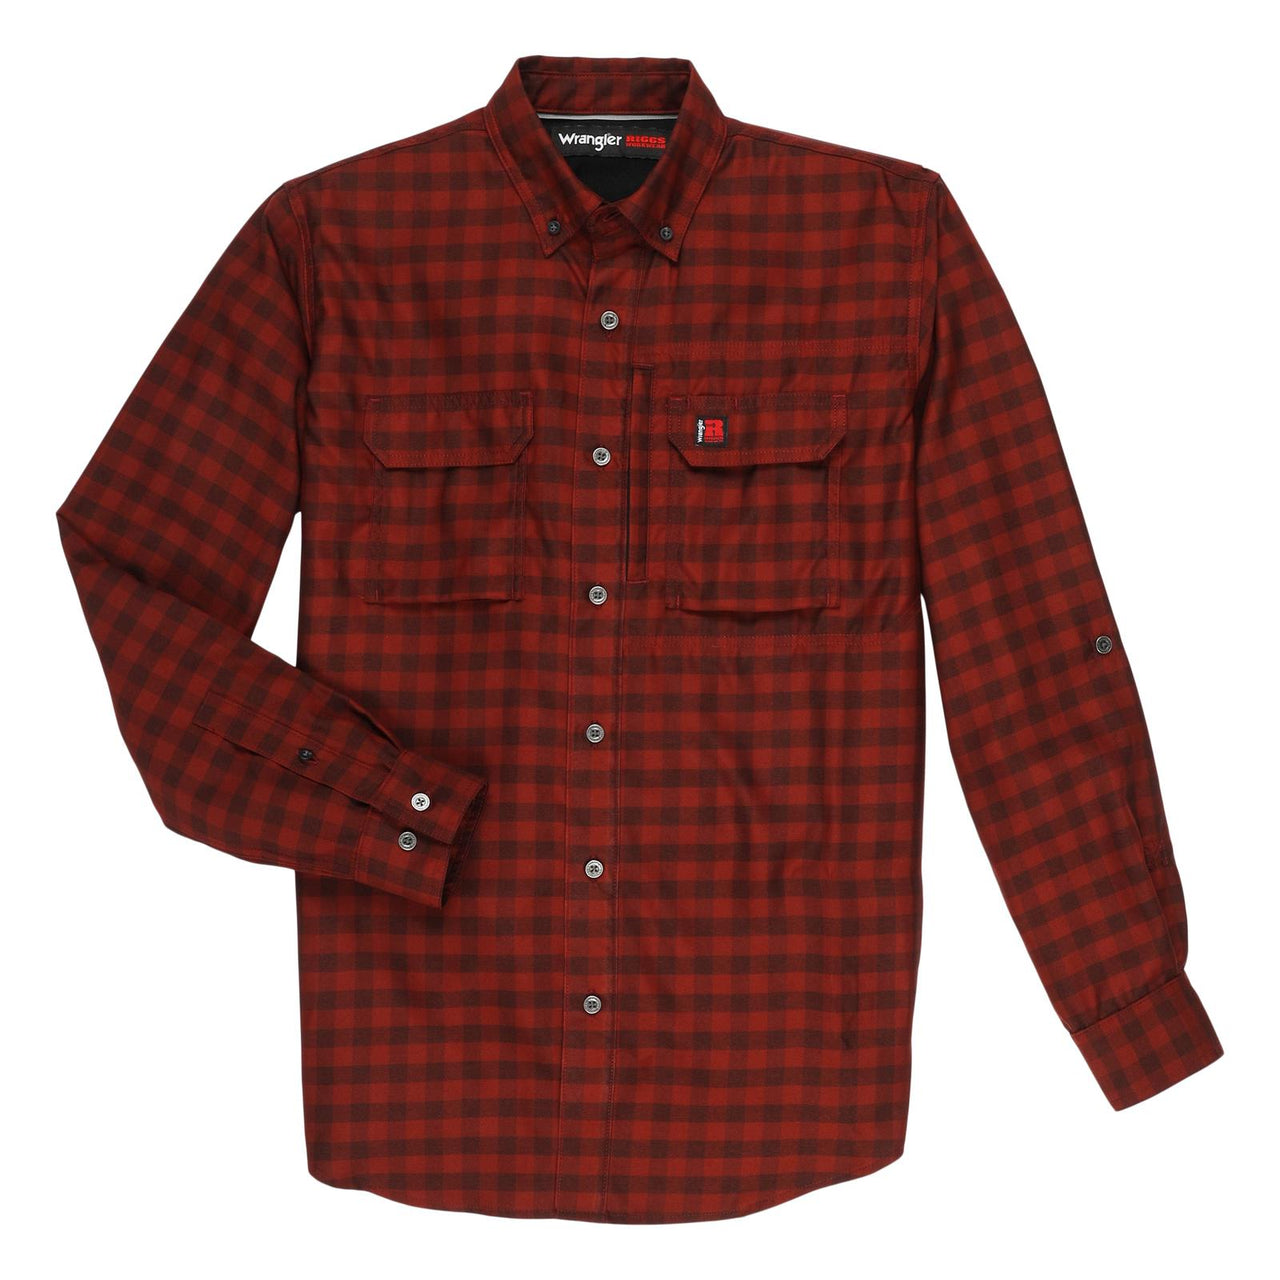 Wrangler Men's RIGGS Technical Long Sleeve Work Shirt - Red